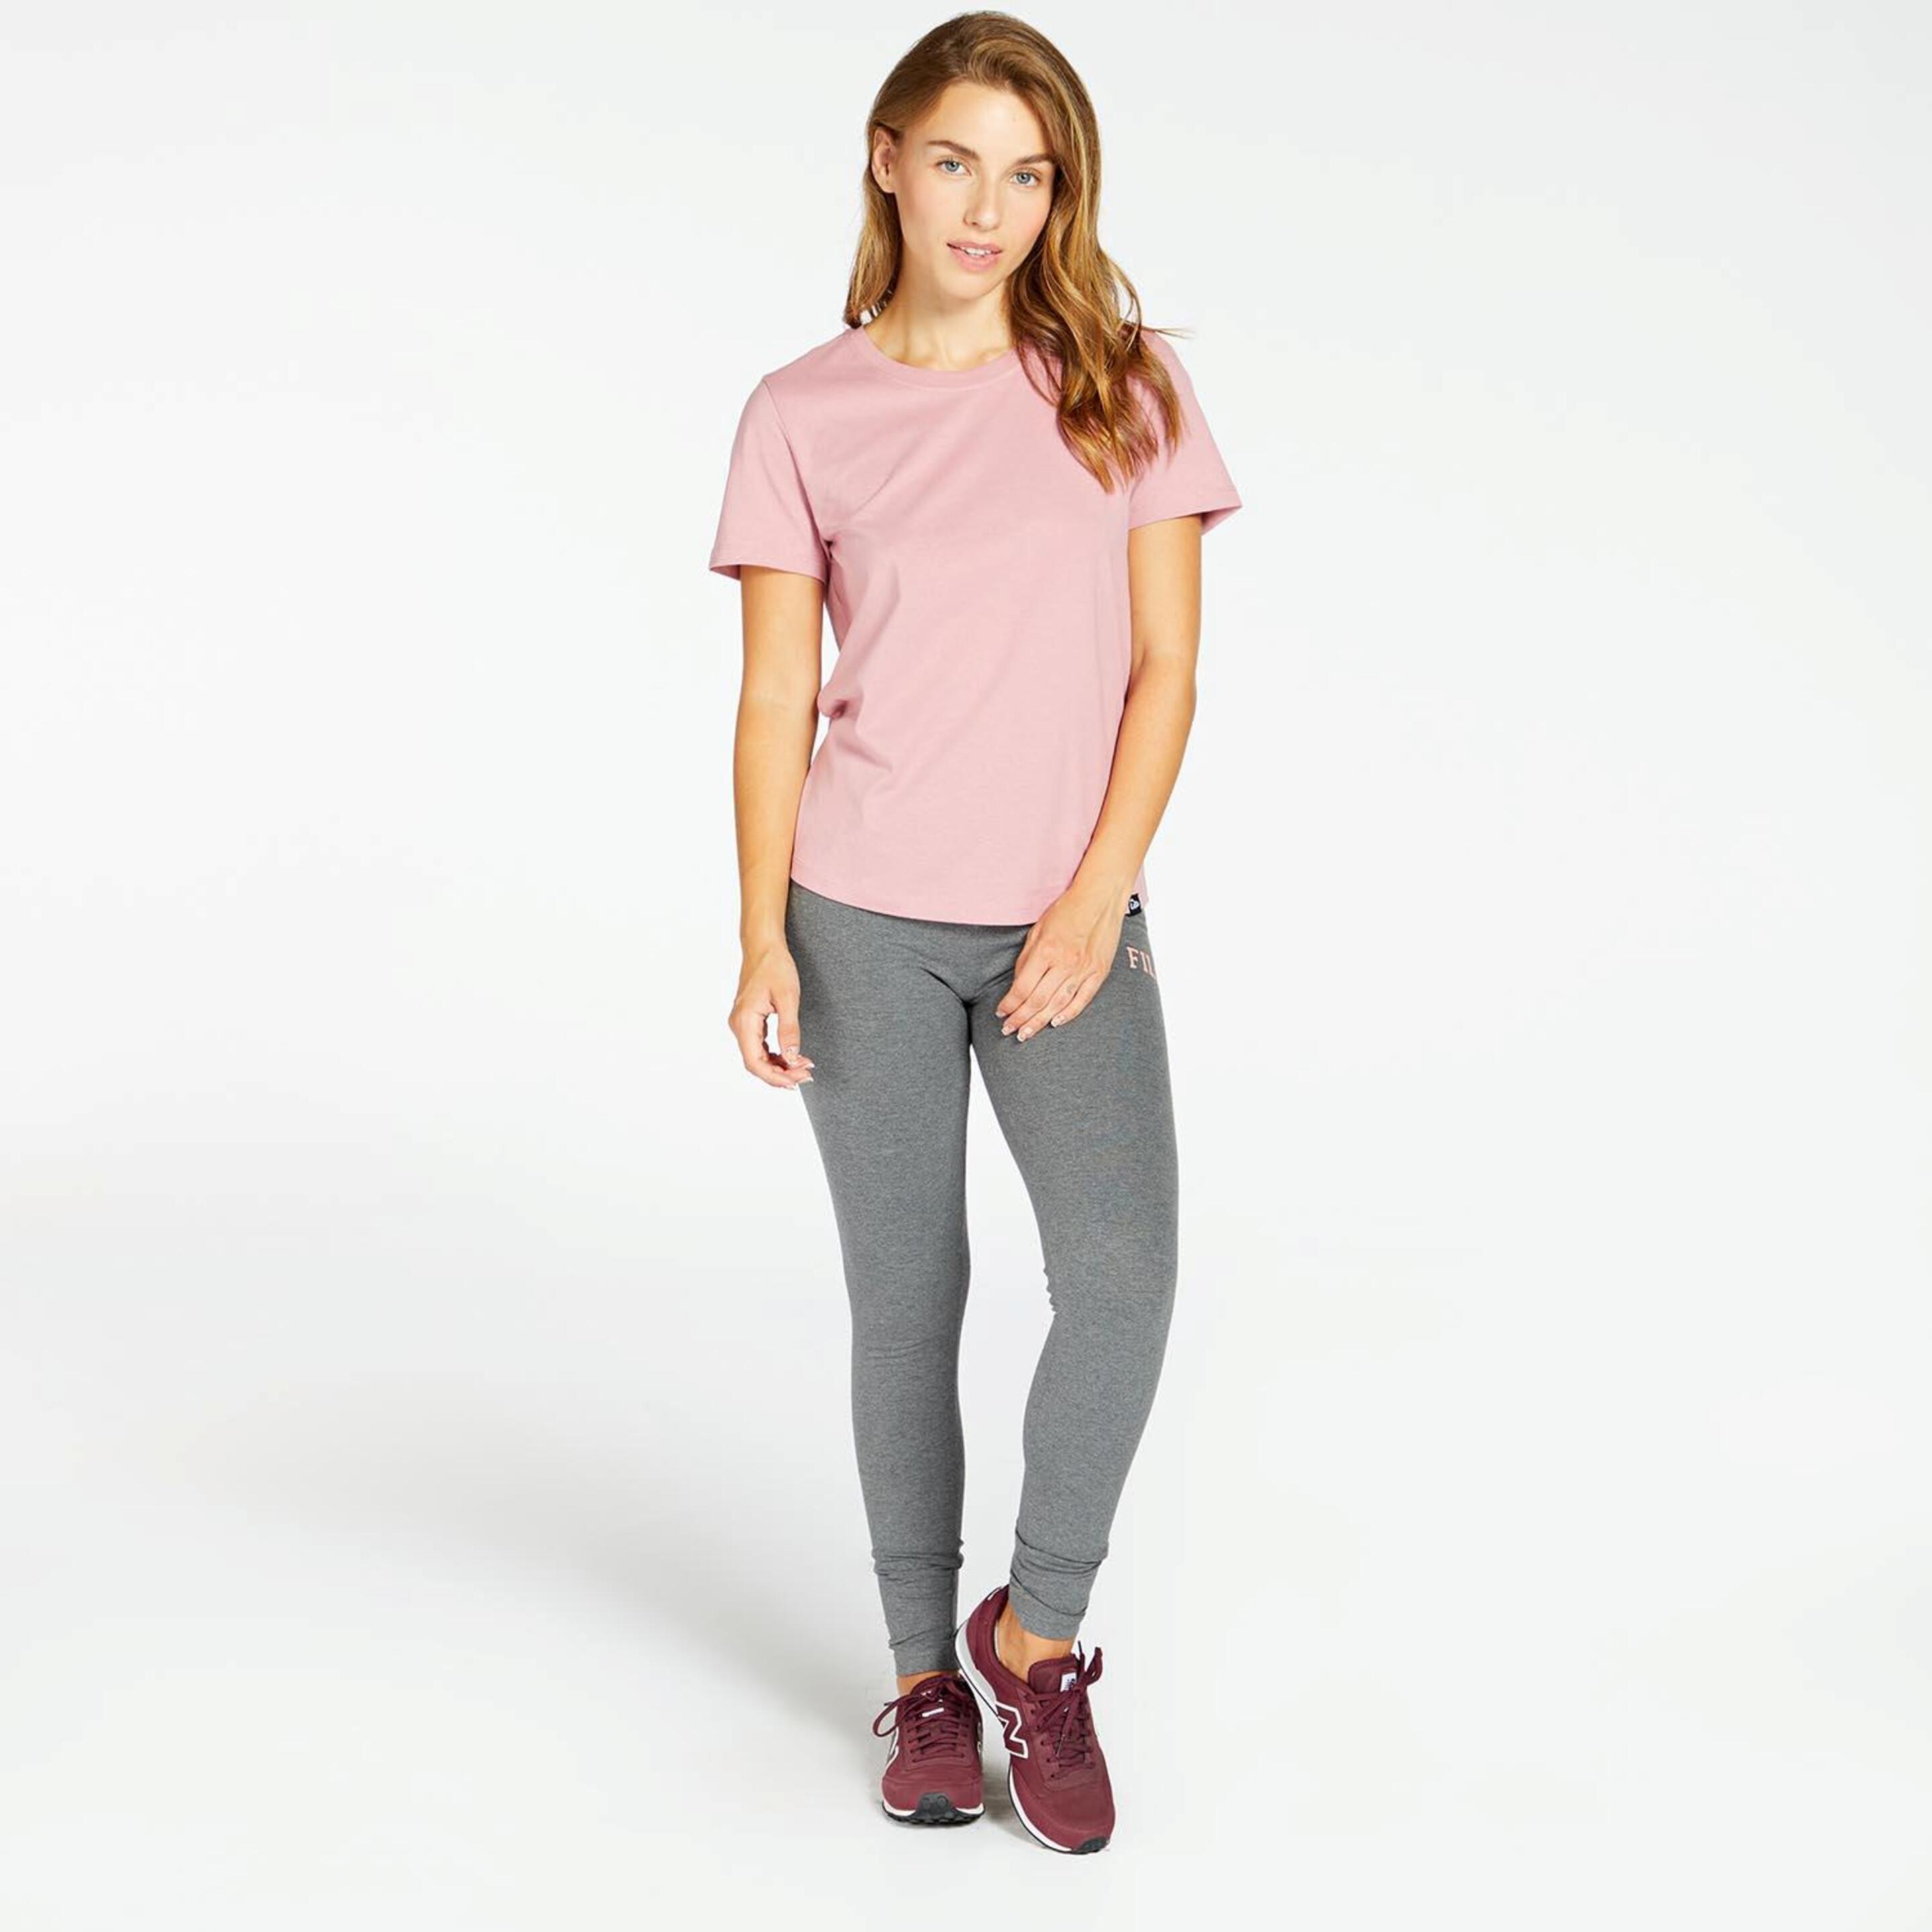 Up Basic - Rosa - Camiseta Mujer